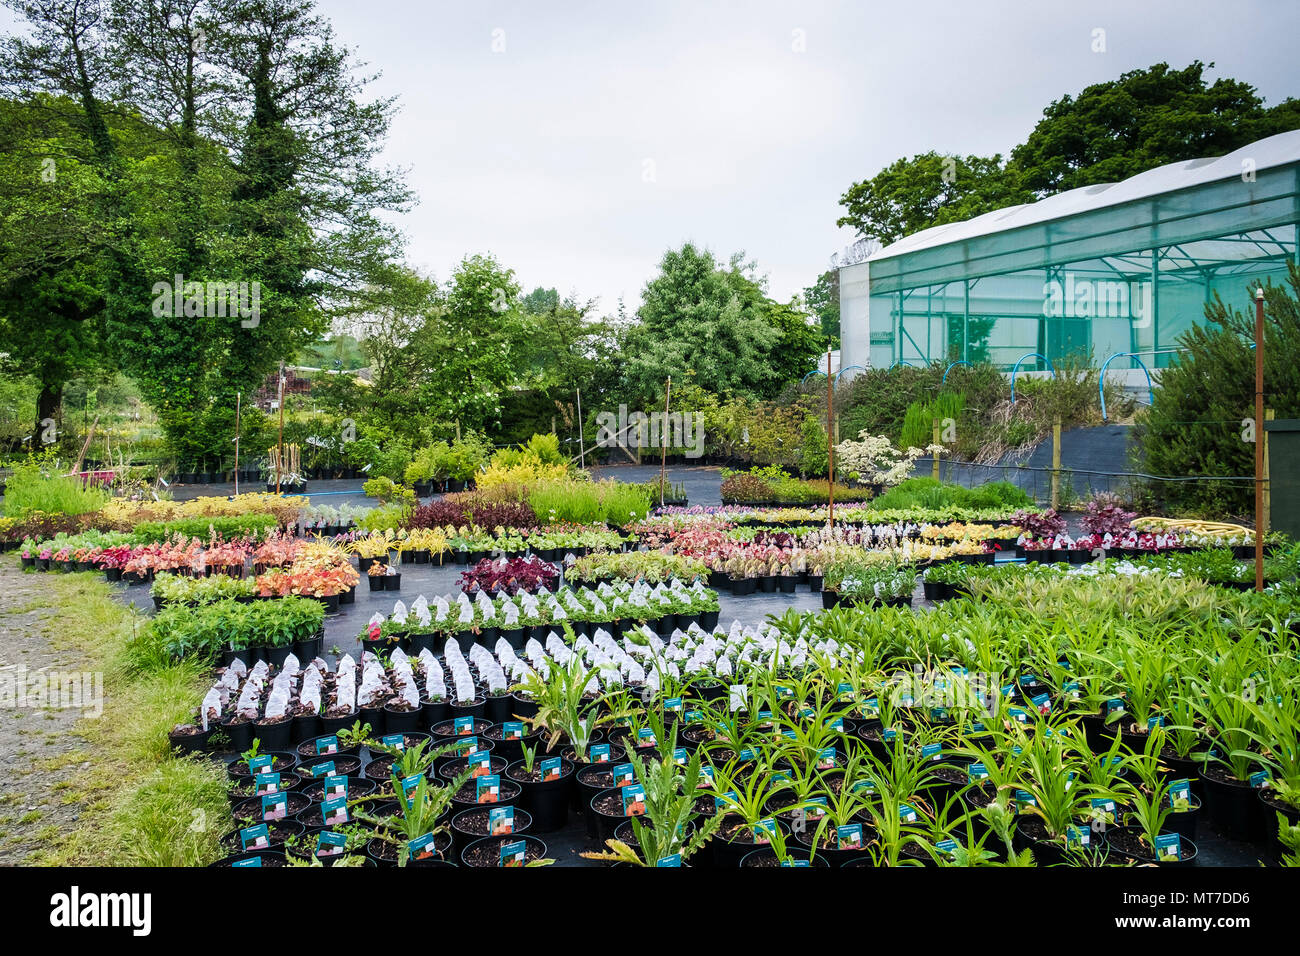 Eine grosse Auswahl an Pflanzen für den Verkauf in einem großen Gartencenter Baumschule. Stockfoto